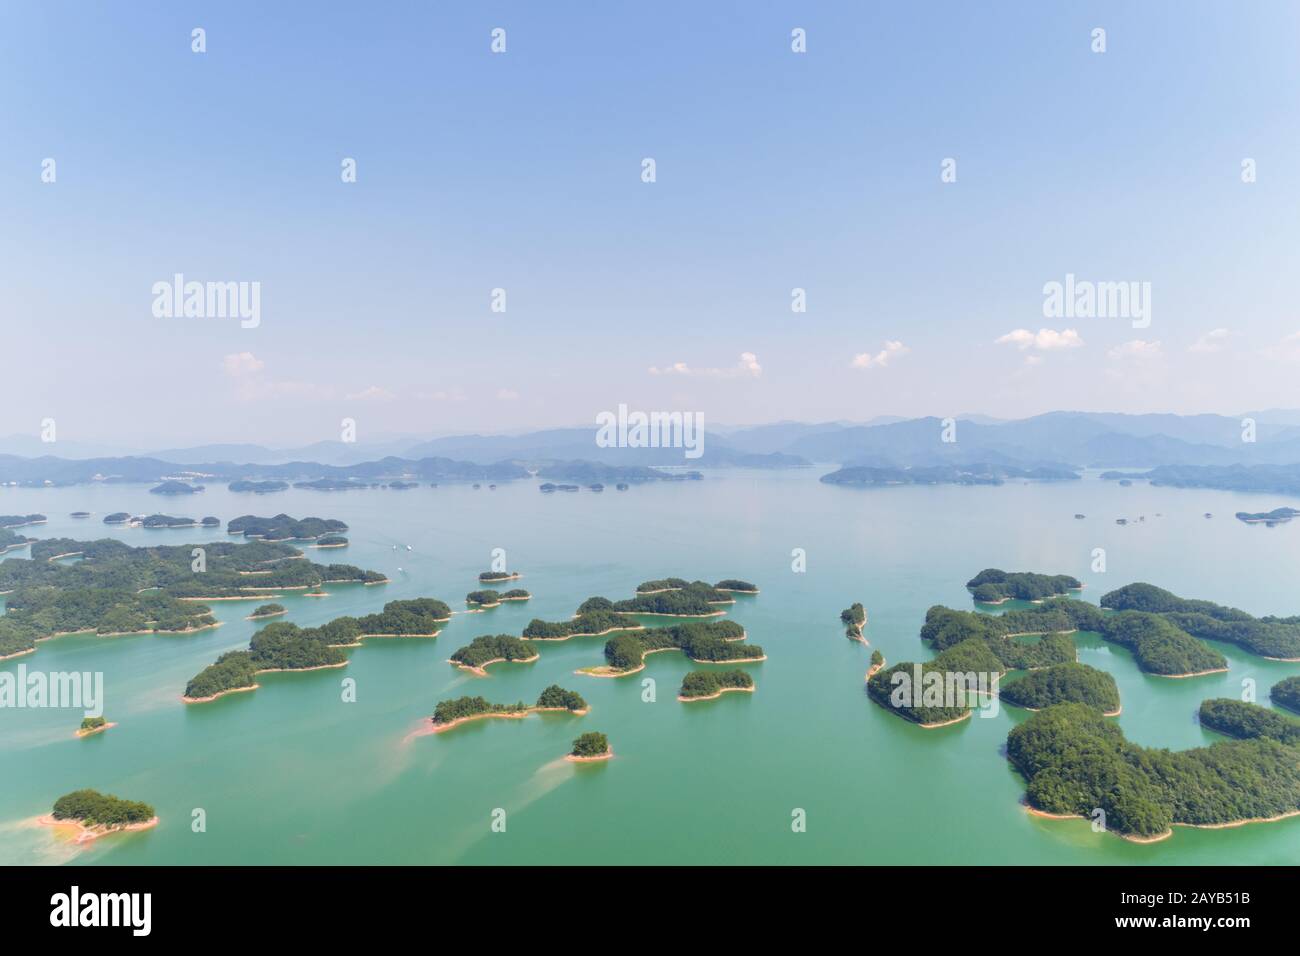 vista aerea del lago delle migliaia di isole di hangzhou Foto Stock